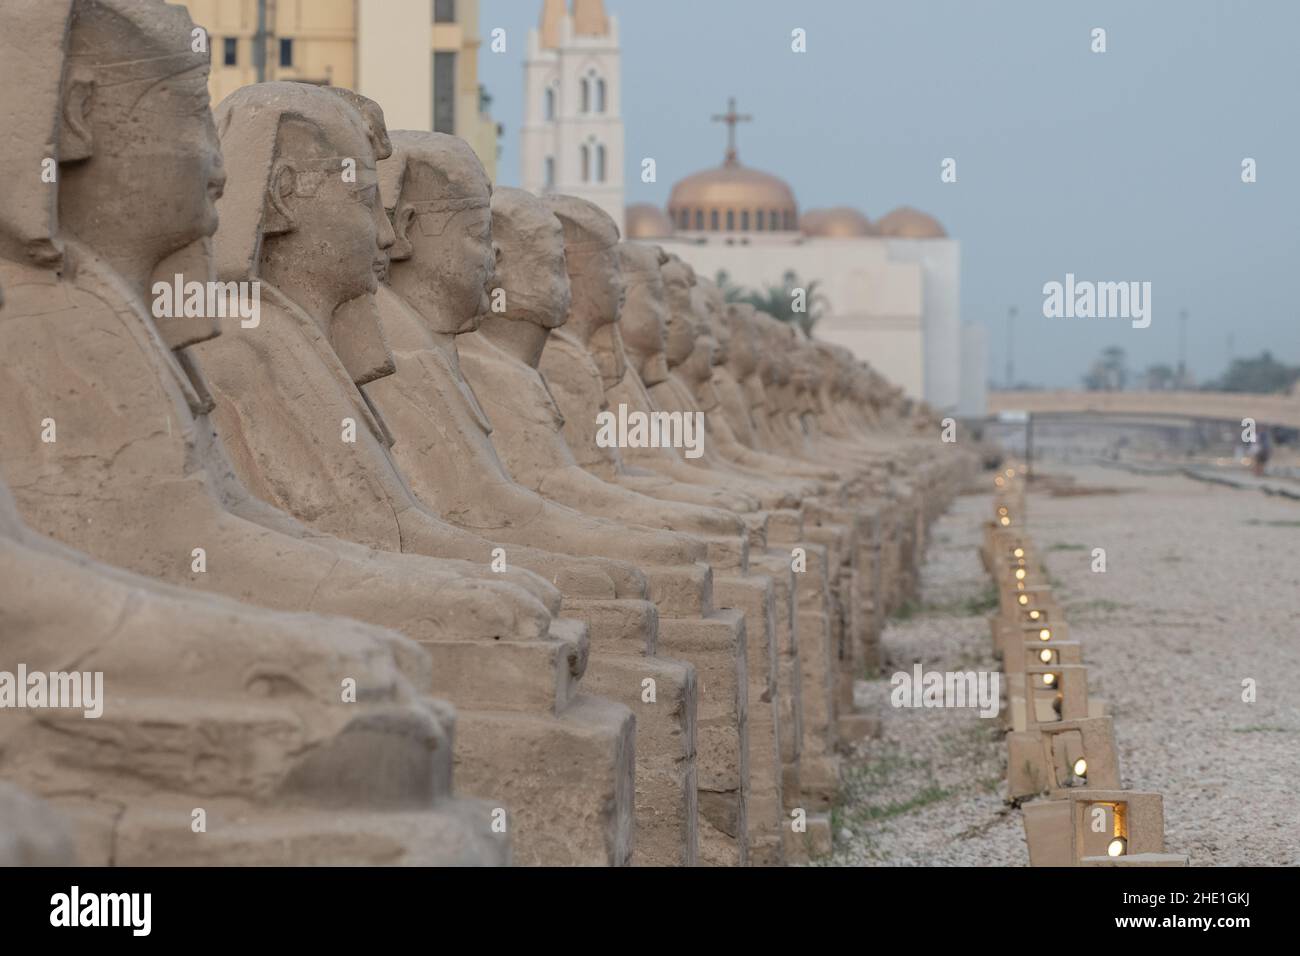 Le antiche statue sfinge che costeggiano il viale delle sfingi a Luxor, Egitto la strada storica è fiancheggiata da 100s monumenti di pietra. Foto Stock